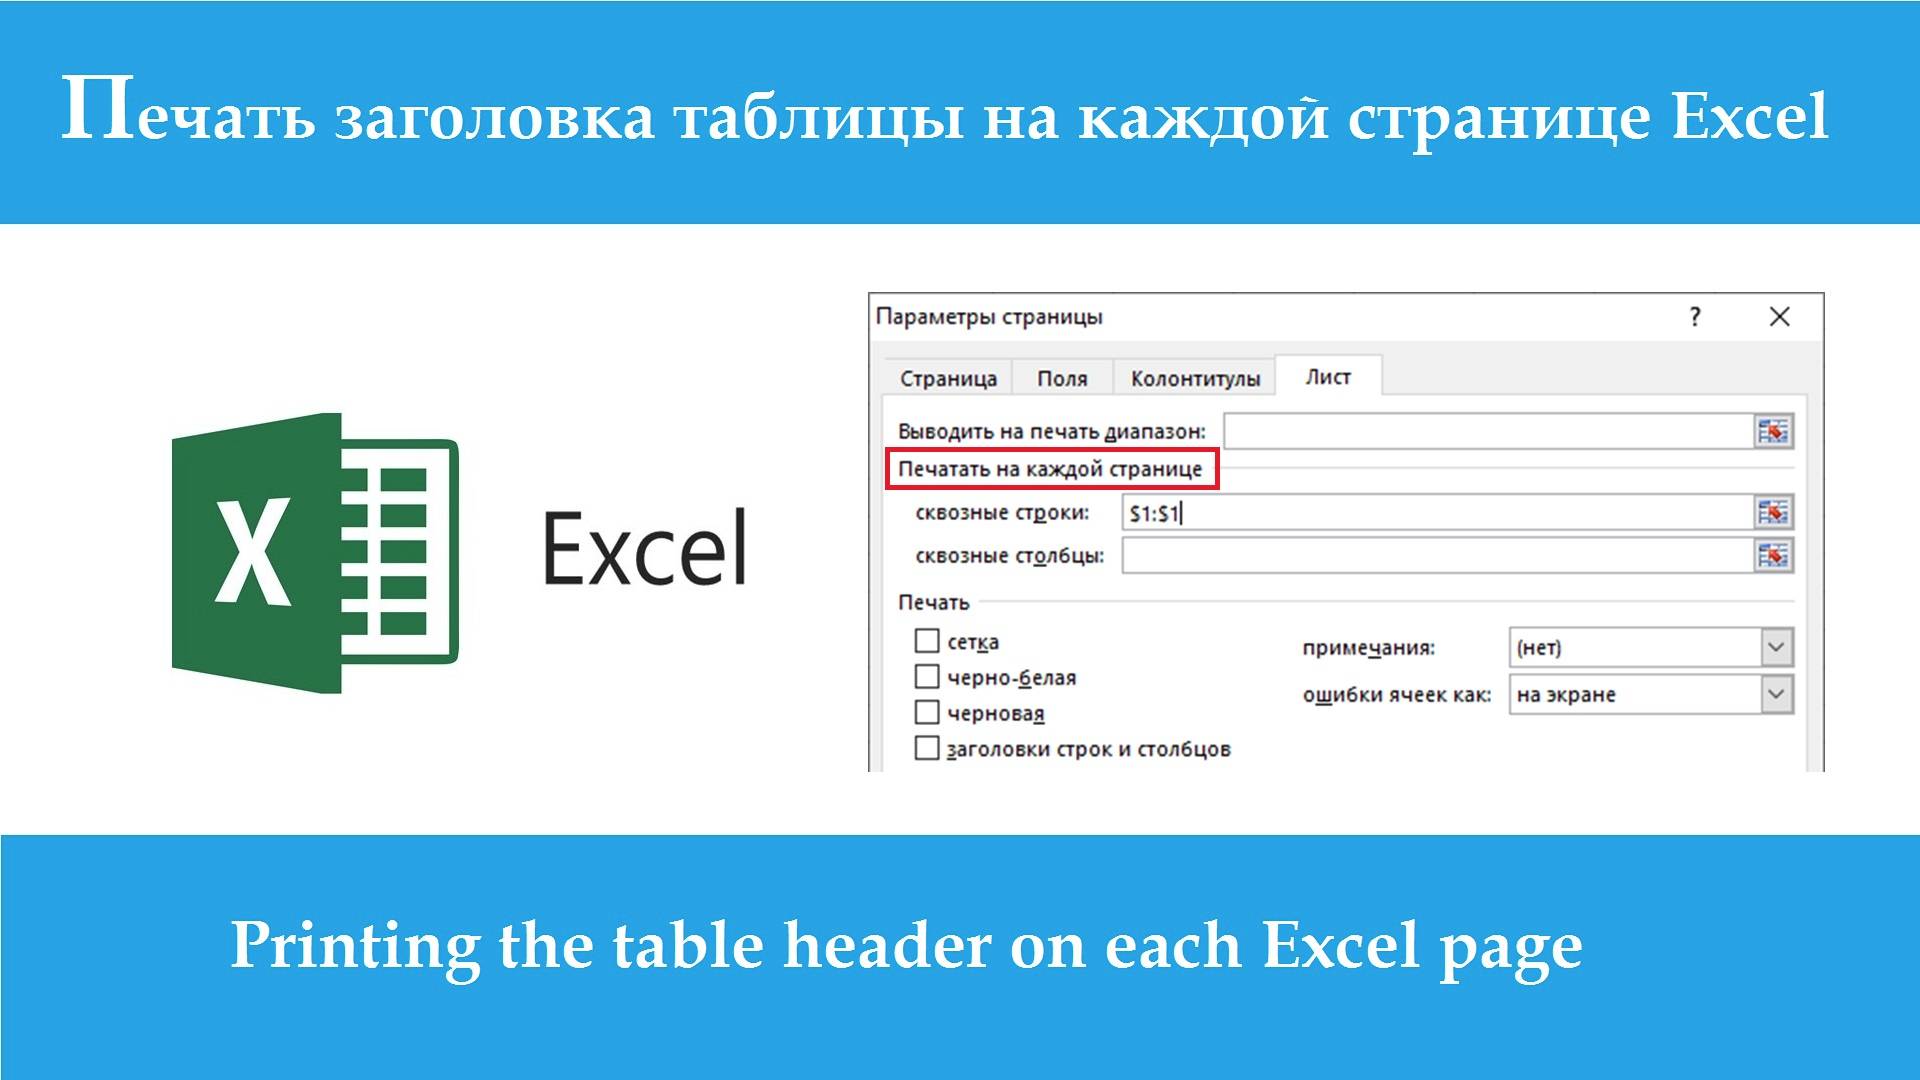 Печать заголовка таблицы на каждой странице Excel